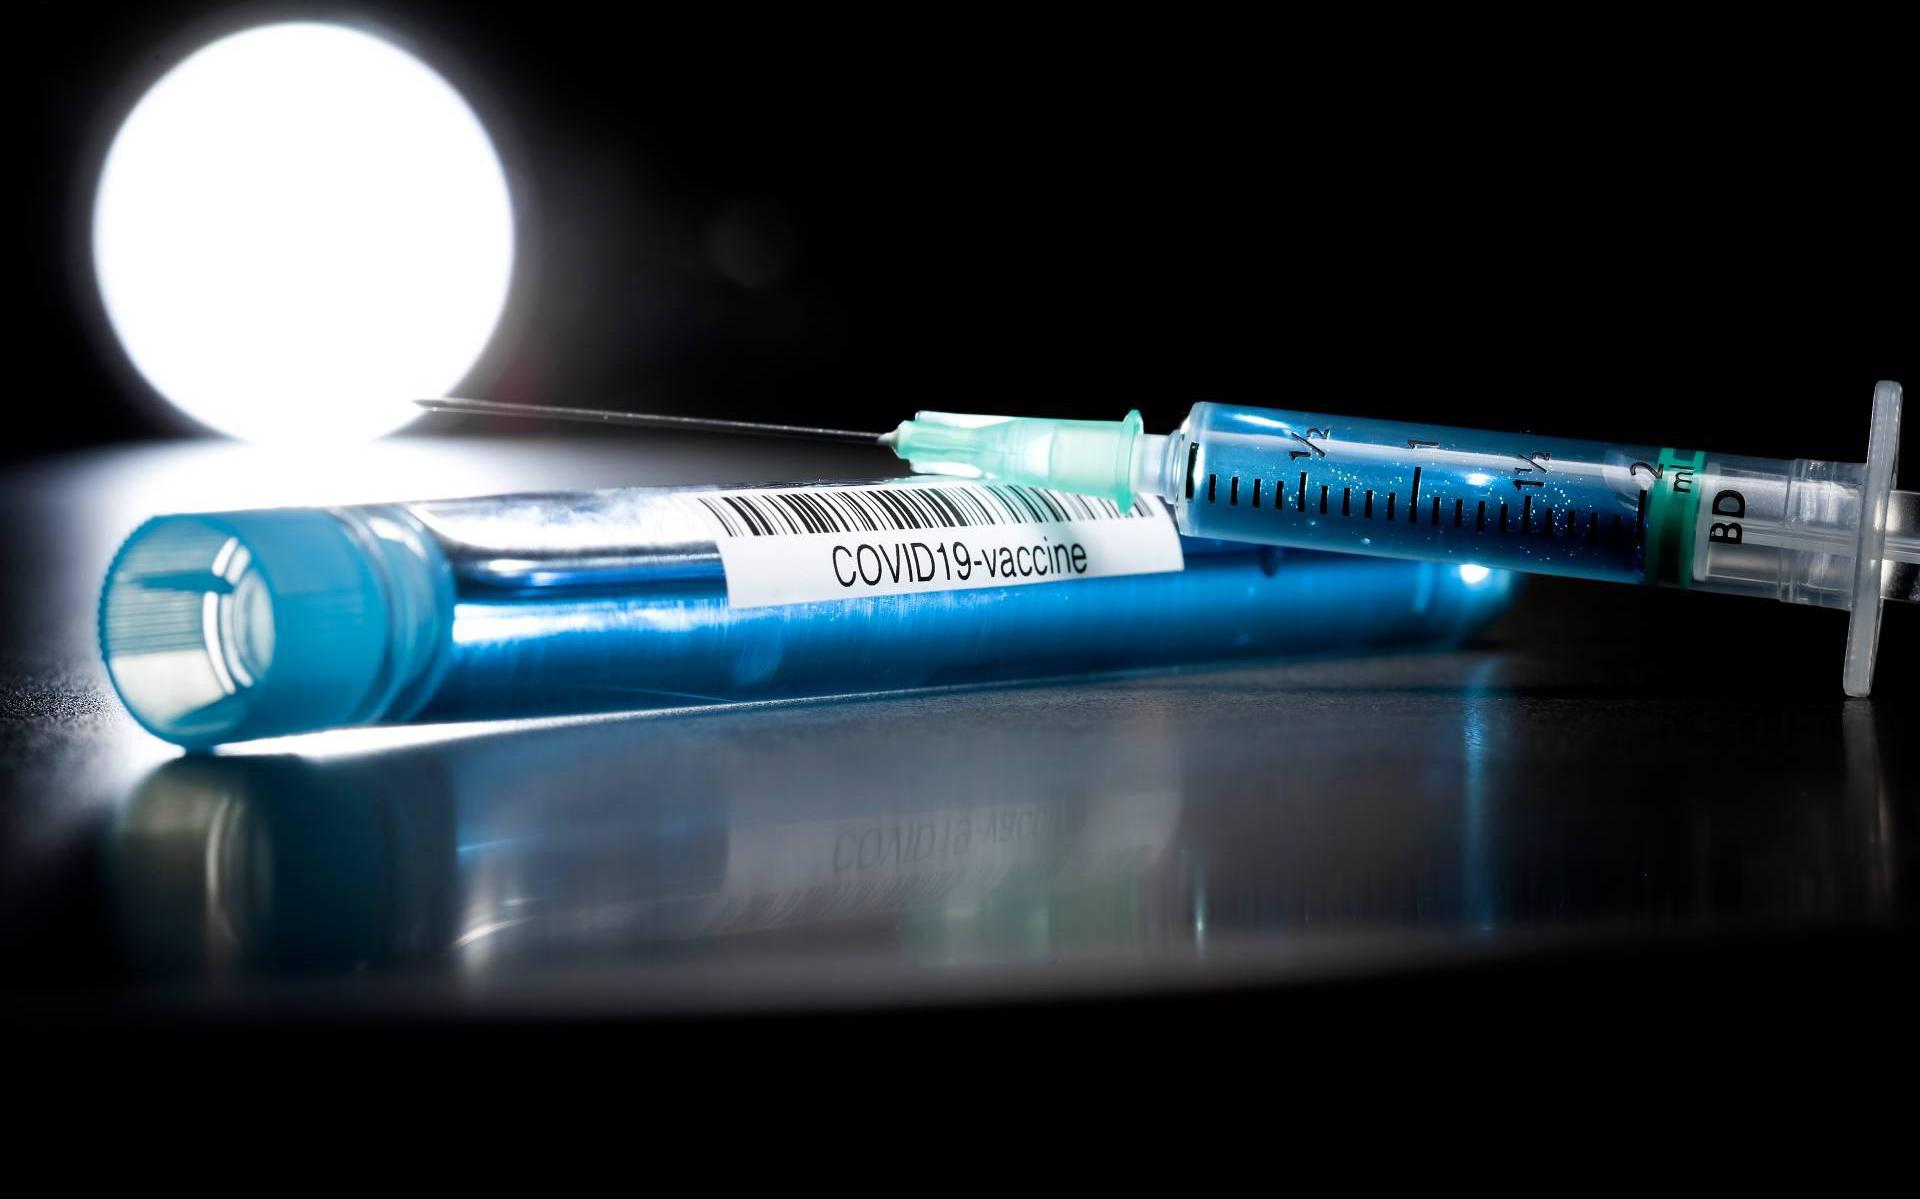 UNICEF legt 520 miljoen spuiten klaar voor coronavaccinaties